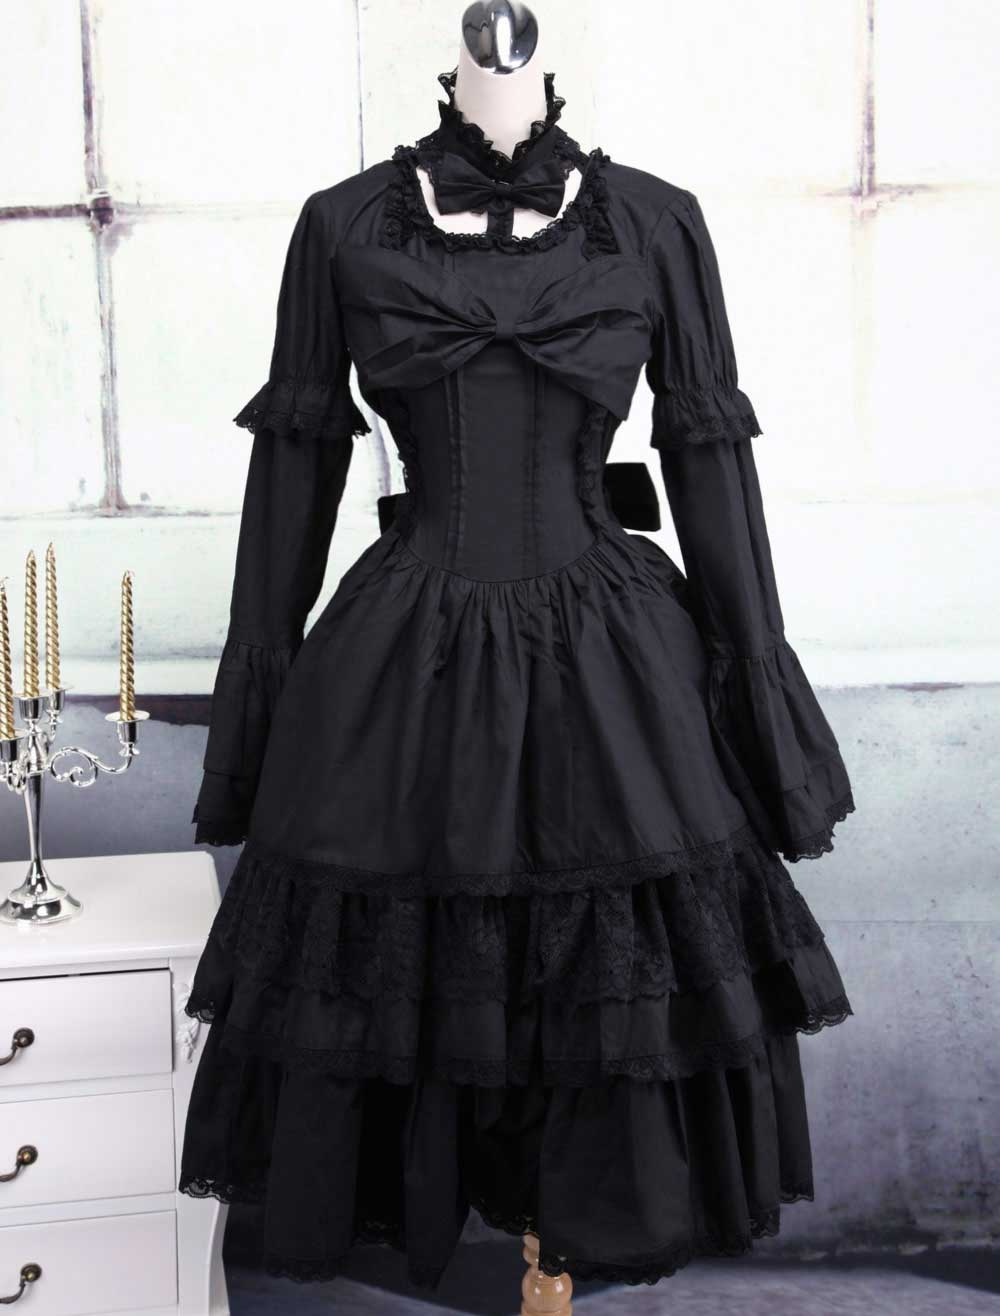 Black Cotton Gothic Lolita Dress - Milanoo.com